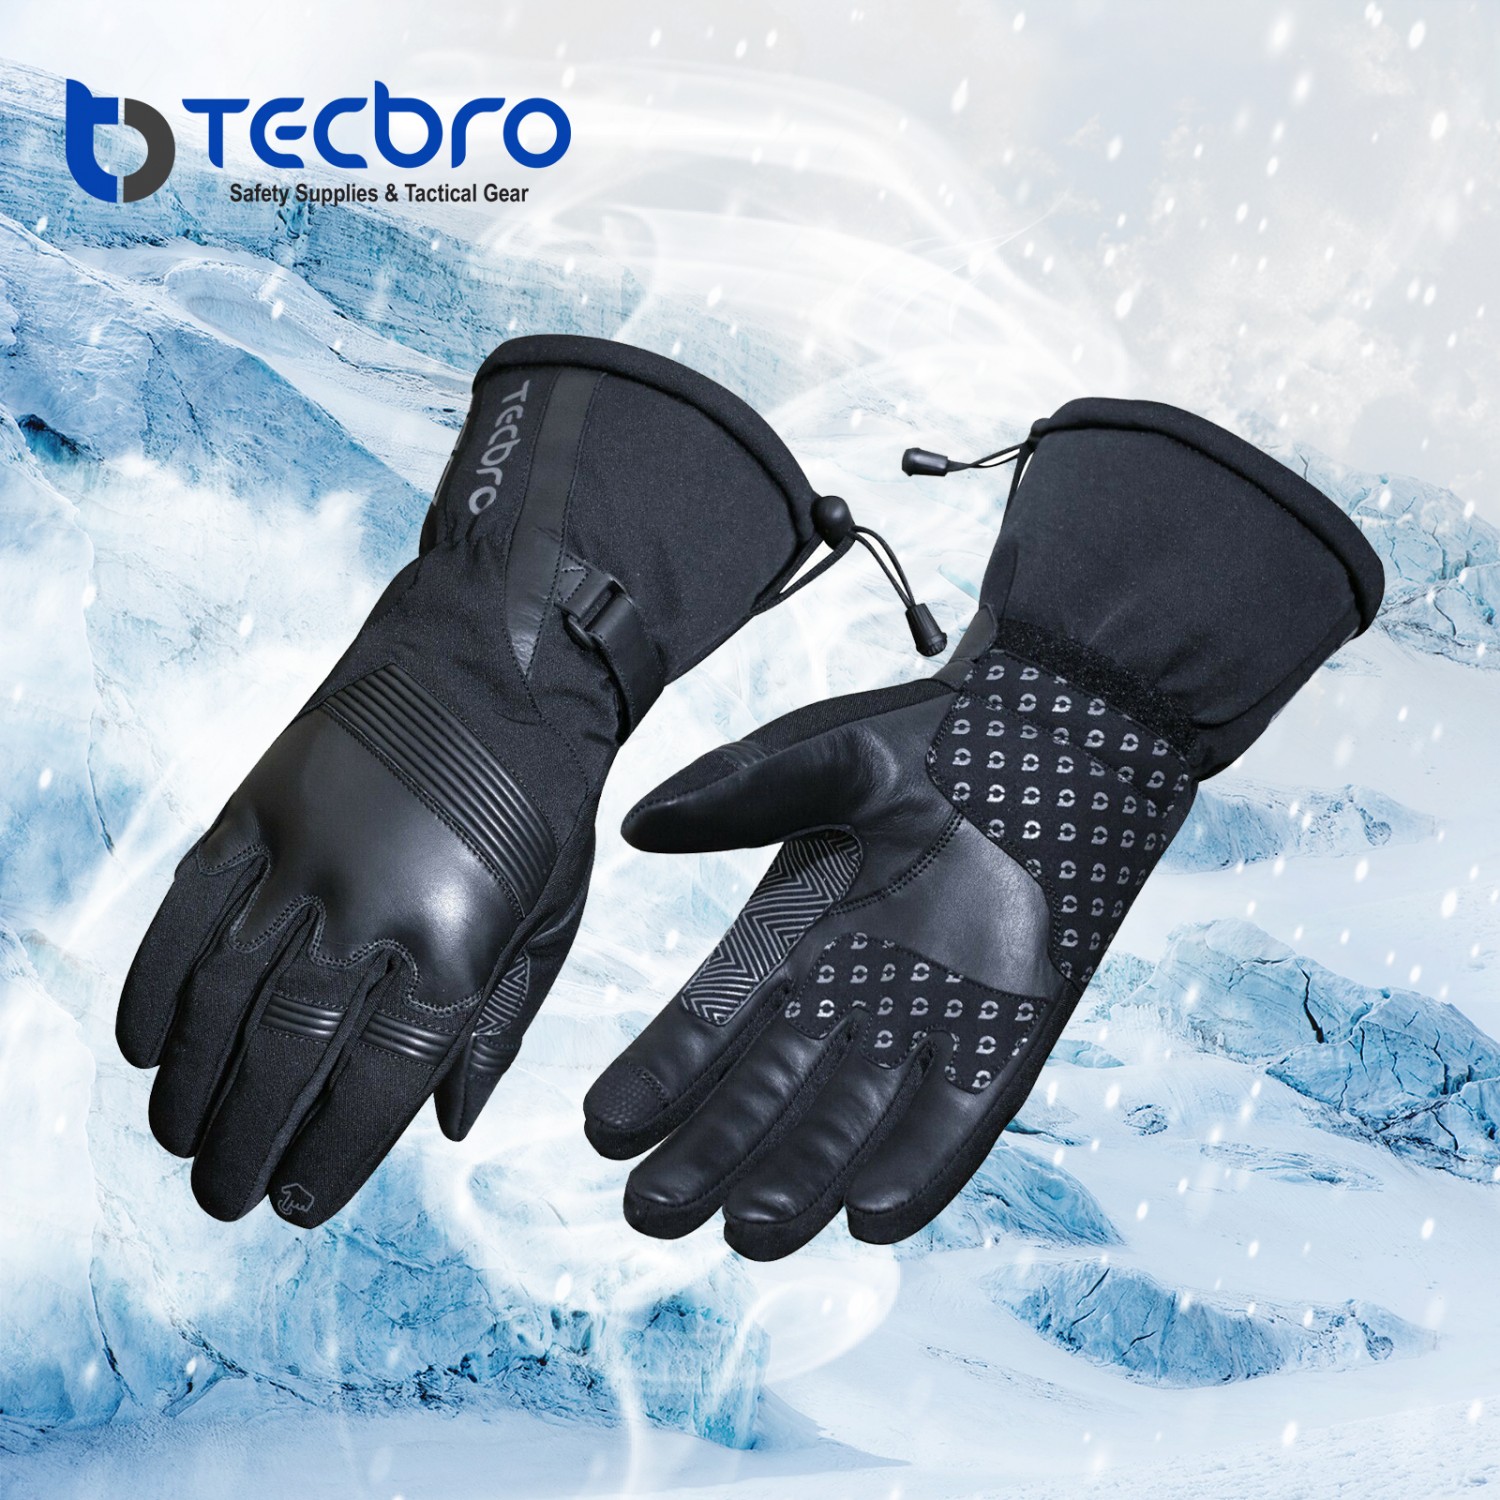 https://tecbro.co/image/cache/tecbro/TMW/Gloves-2-1500x1500.jpg